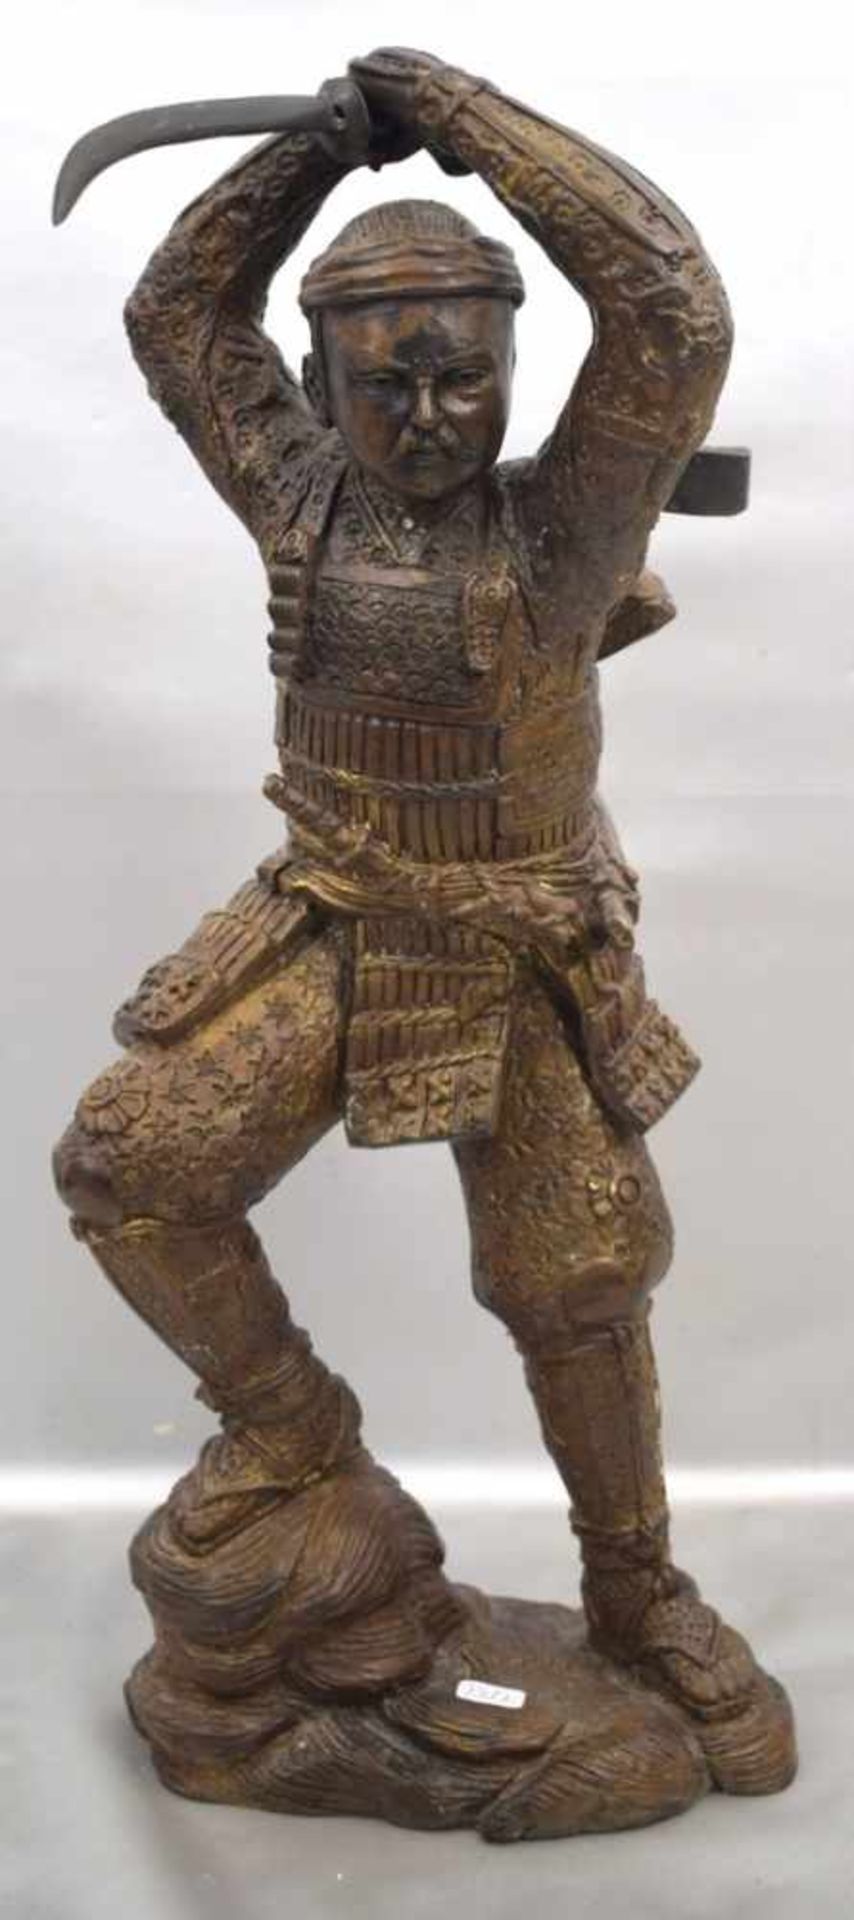 Asiatischer Samurai-Kämpferauf Sockel stehend, mit Schwert, Bronze, patiniert, H 44 cm, 20. Jh.